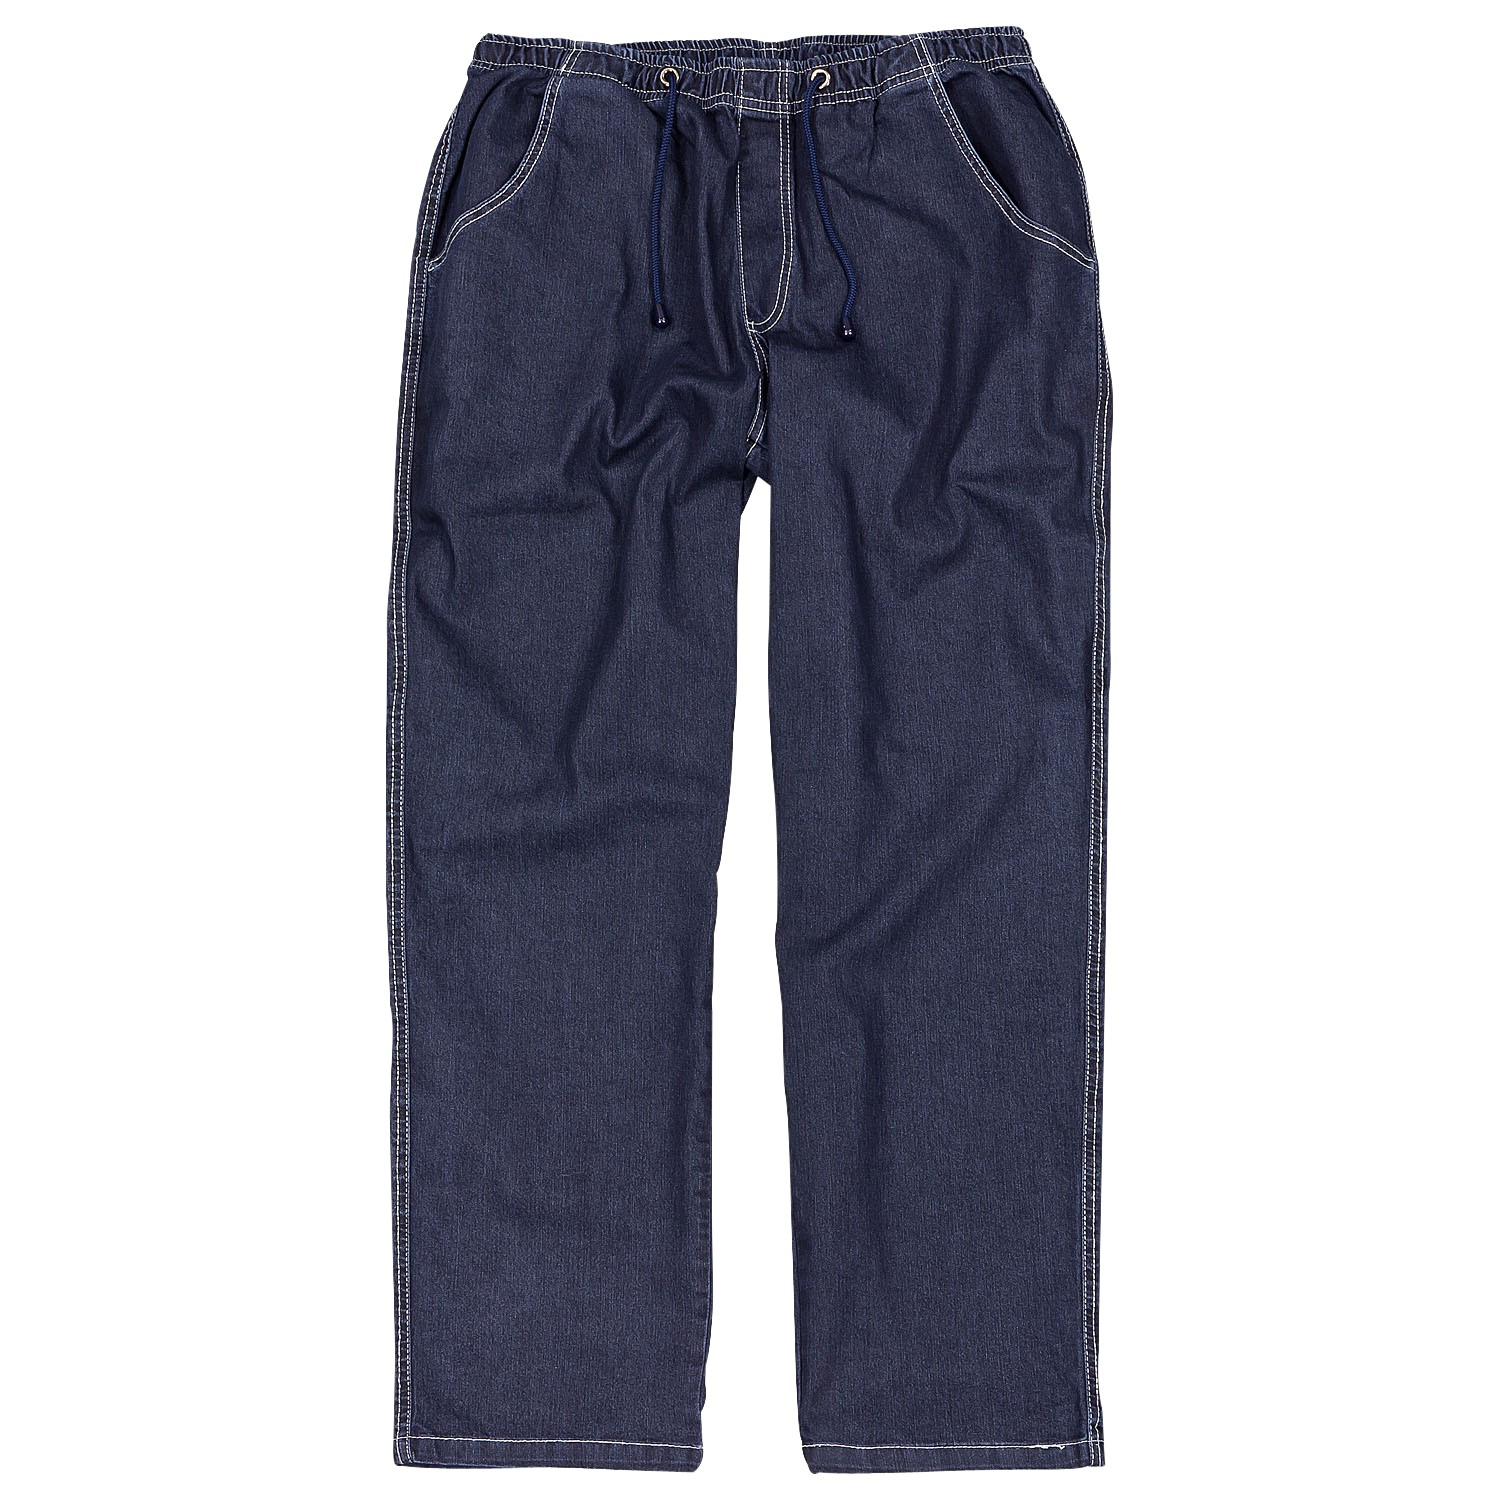 Dunkelblaue Jogging-Jeans von Abraxas in großen Größen bis 12XL